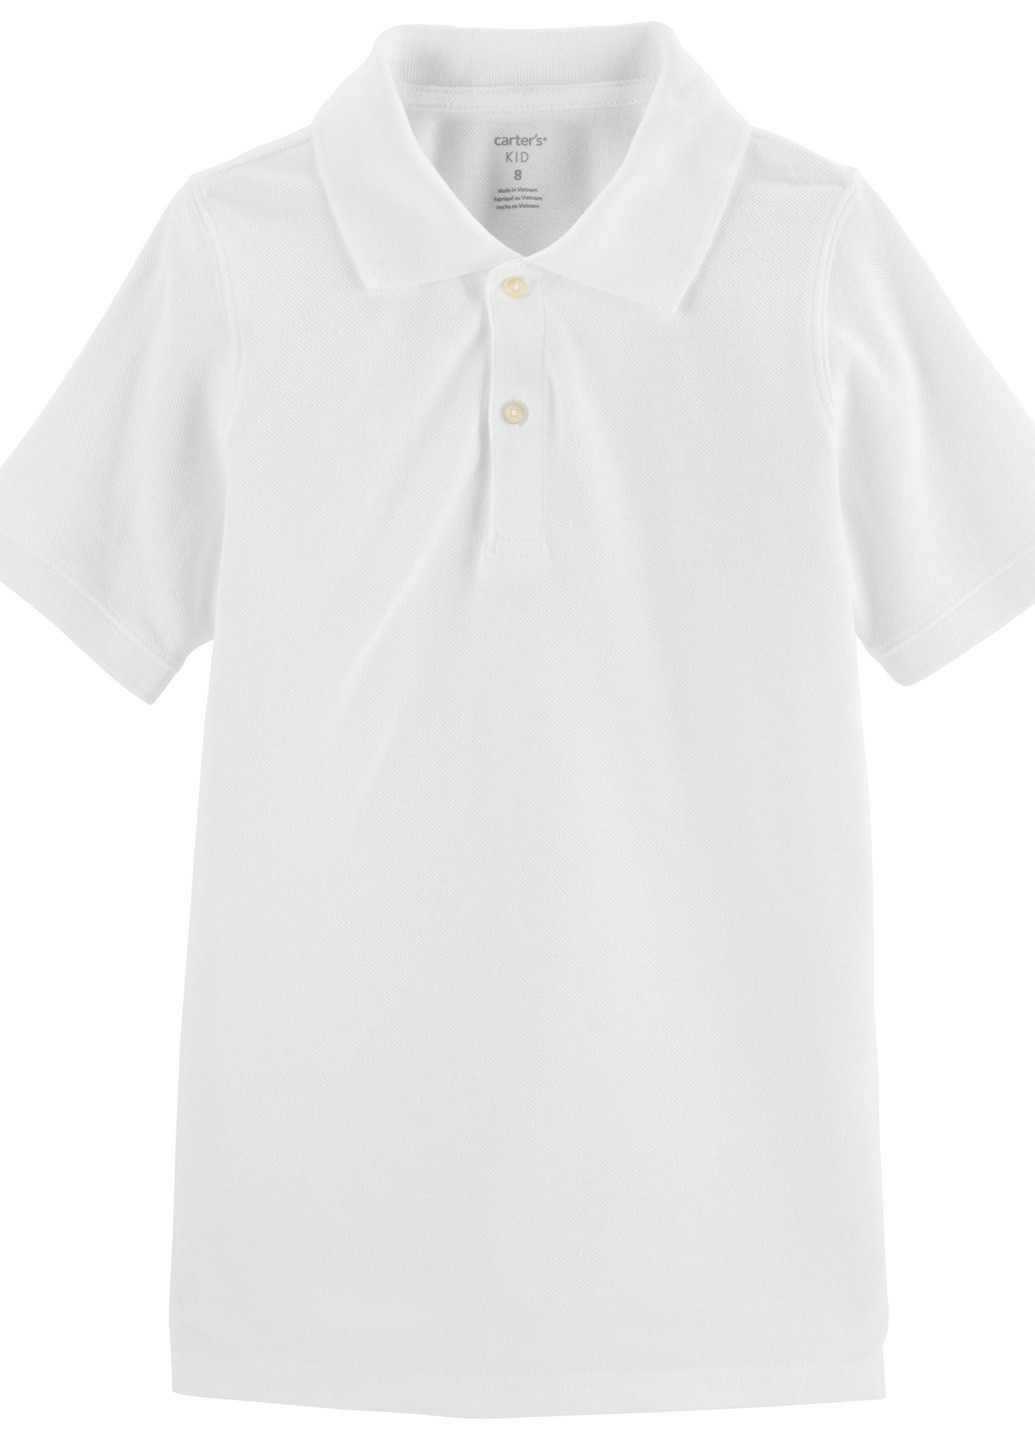 Белая детская футболка-поло для мальчика 127916 для мальчика Carter's